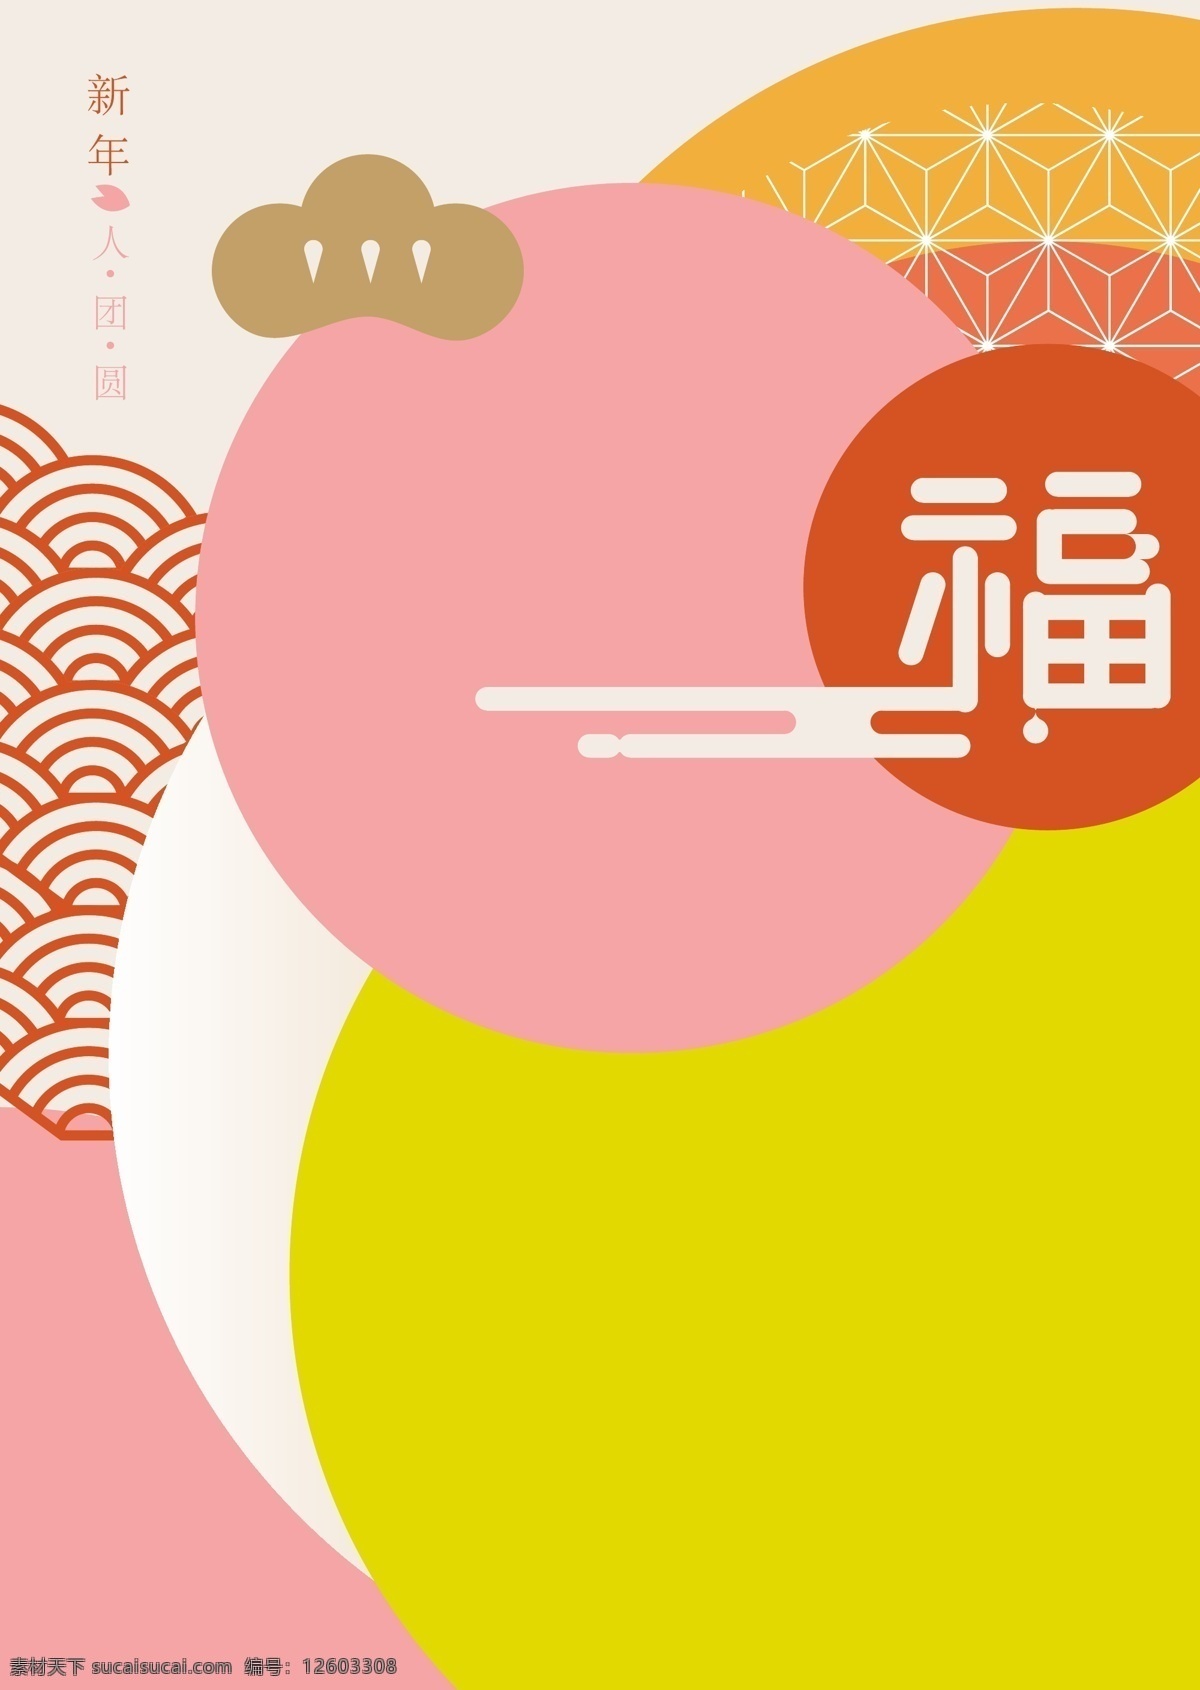 黄色 日本 和式 新年 祈福 图案